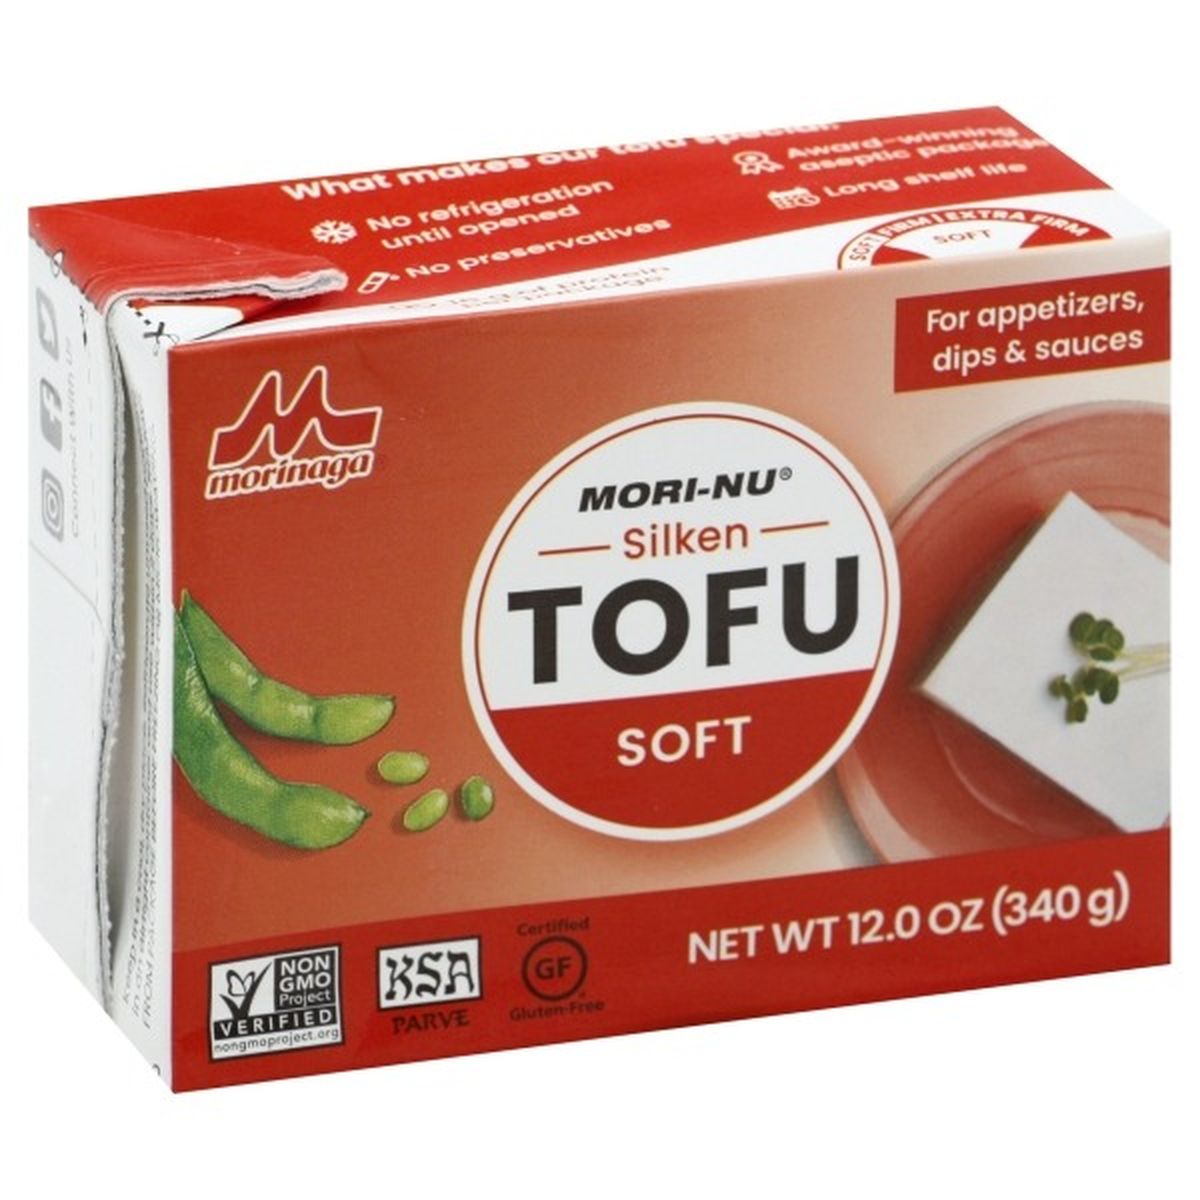 Calories in Mori-Nu Tofu, Soft, Silken